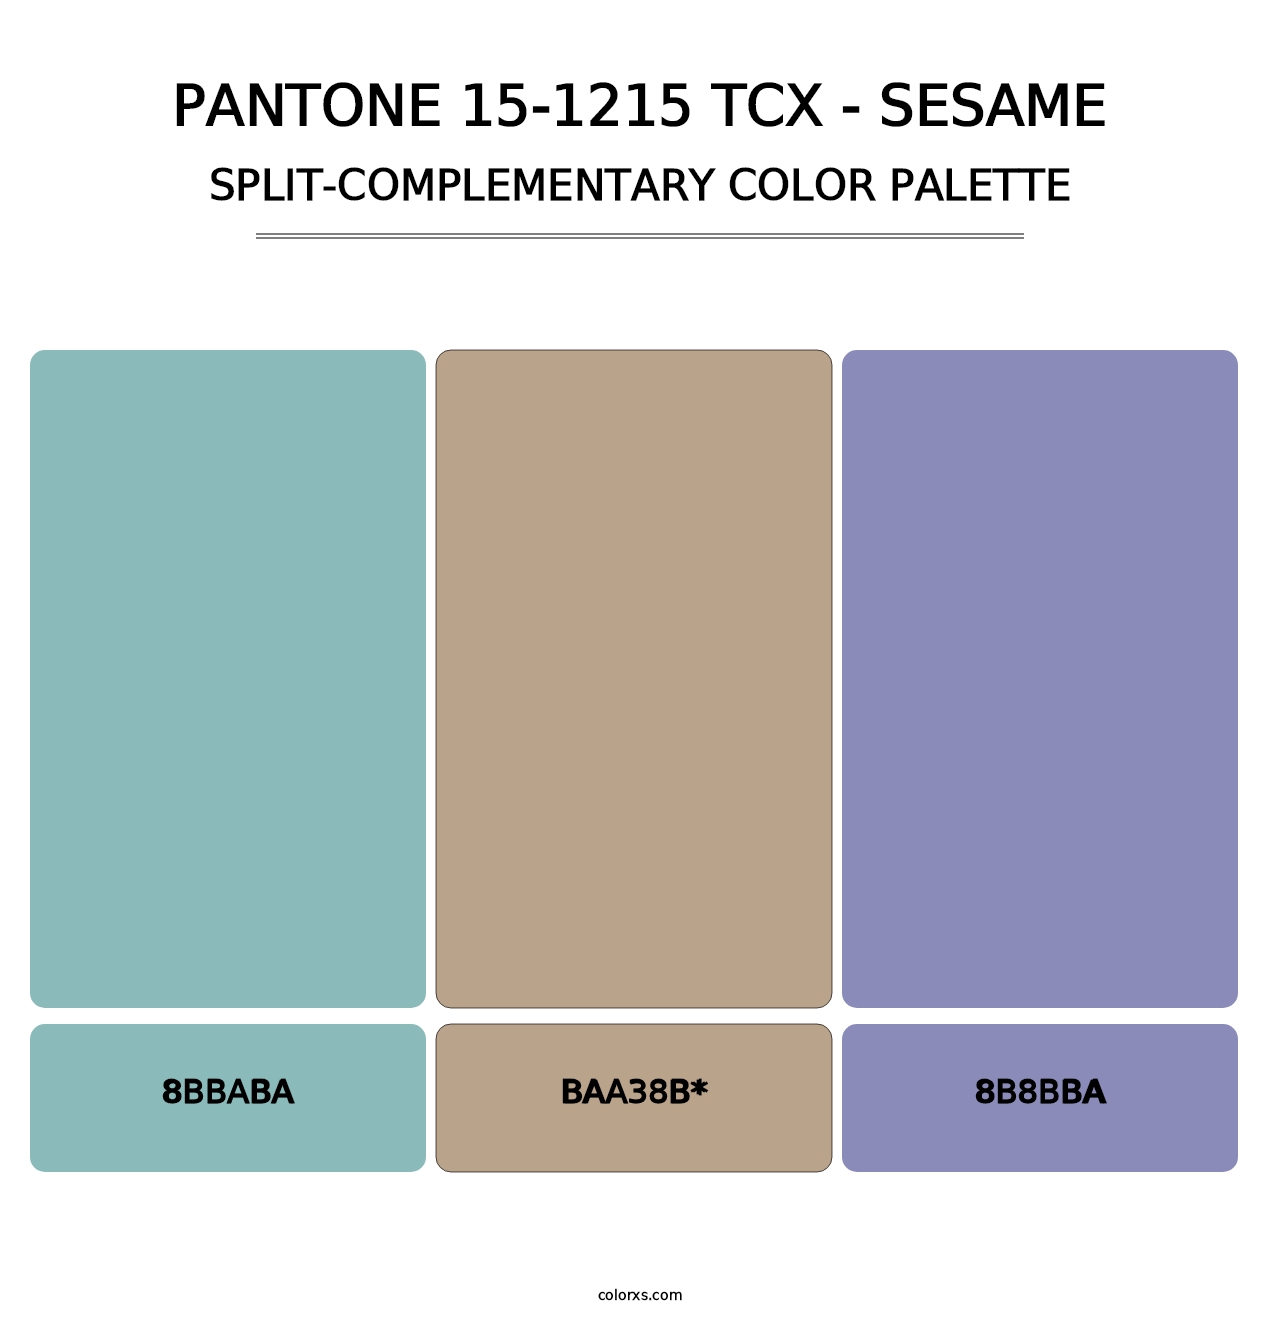 PANTONE 15-1215 TCX - Sesame - Split-Complementary Color Palette